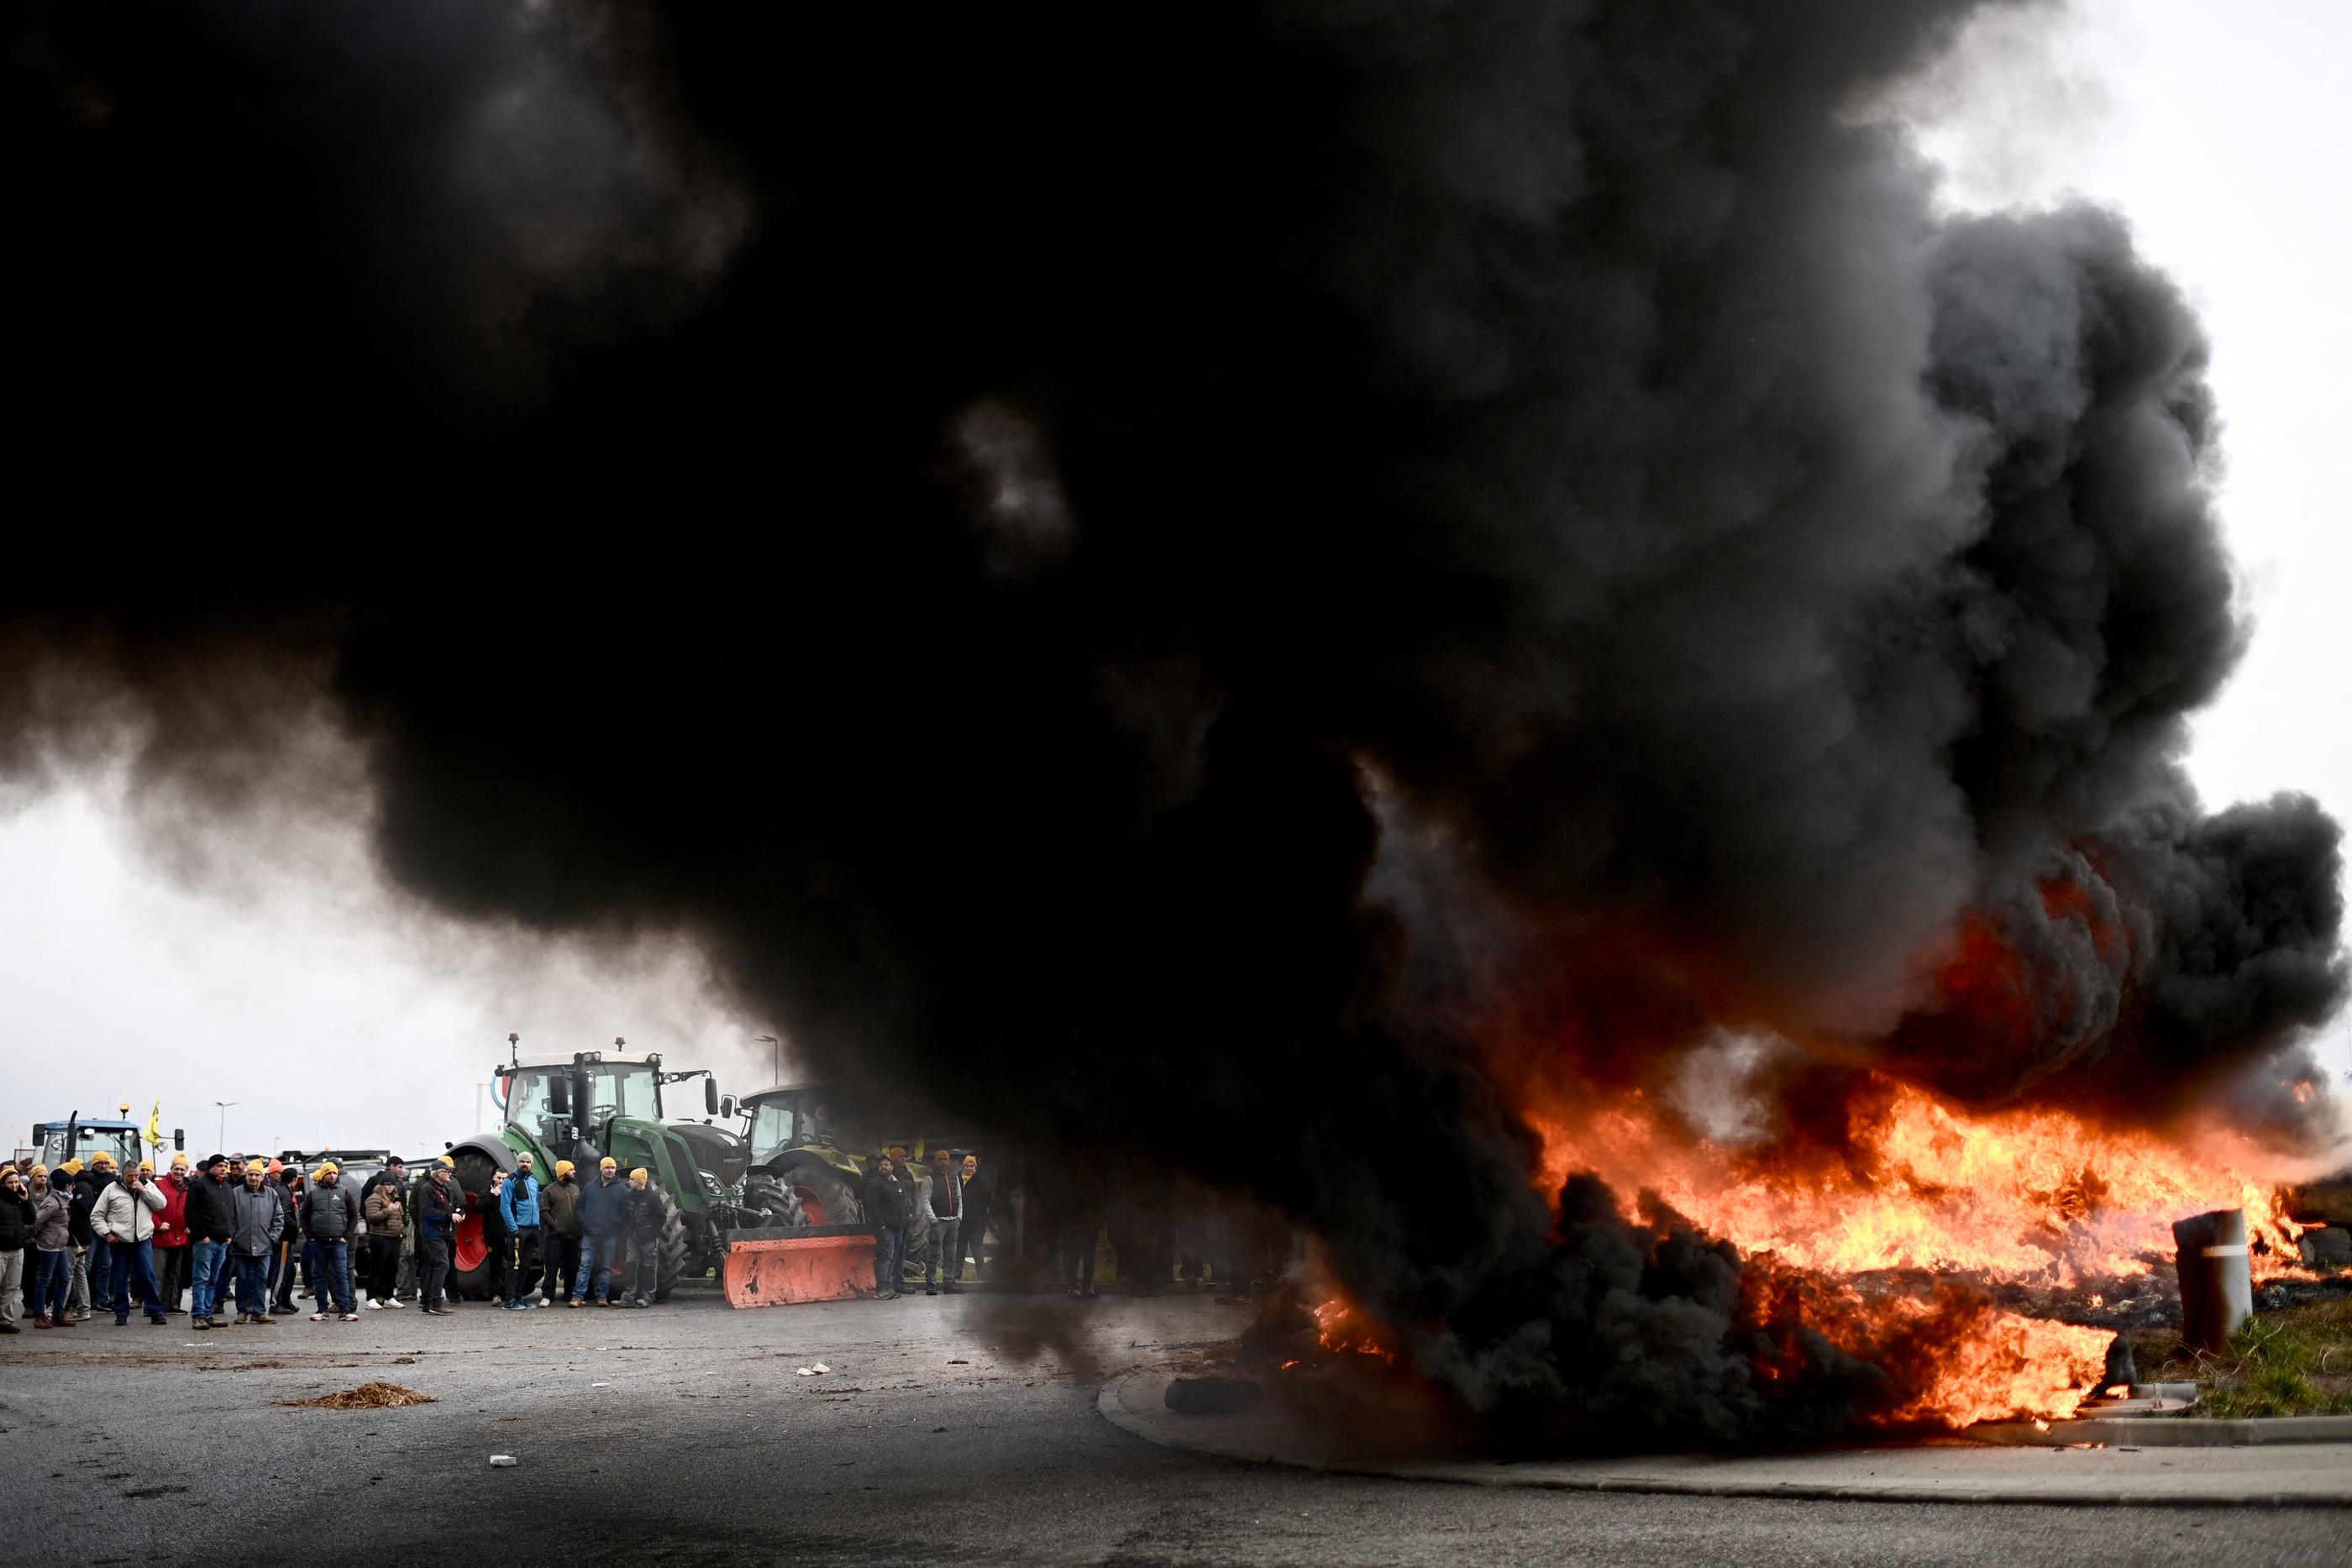 Des agriculteurs lot-et-garonnais brûlent des pneus et des branches devant un centre logistique Super U, près d'Agen, générant un immense nuage de fumée noire. AFP/Christophe Archambault